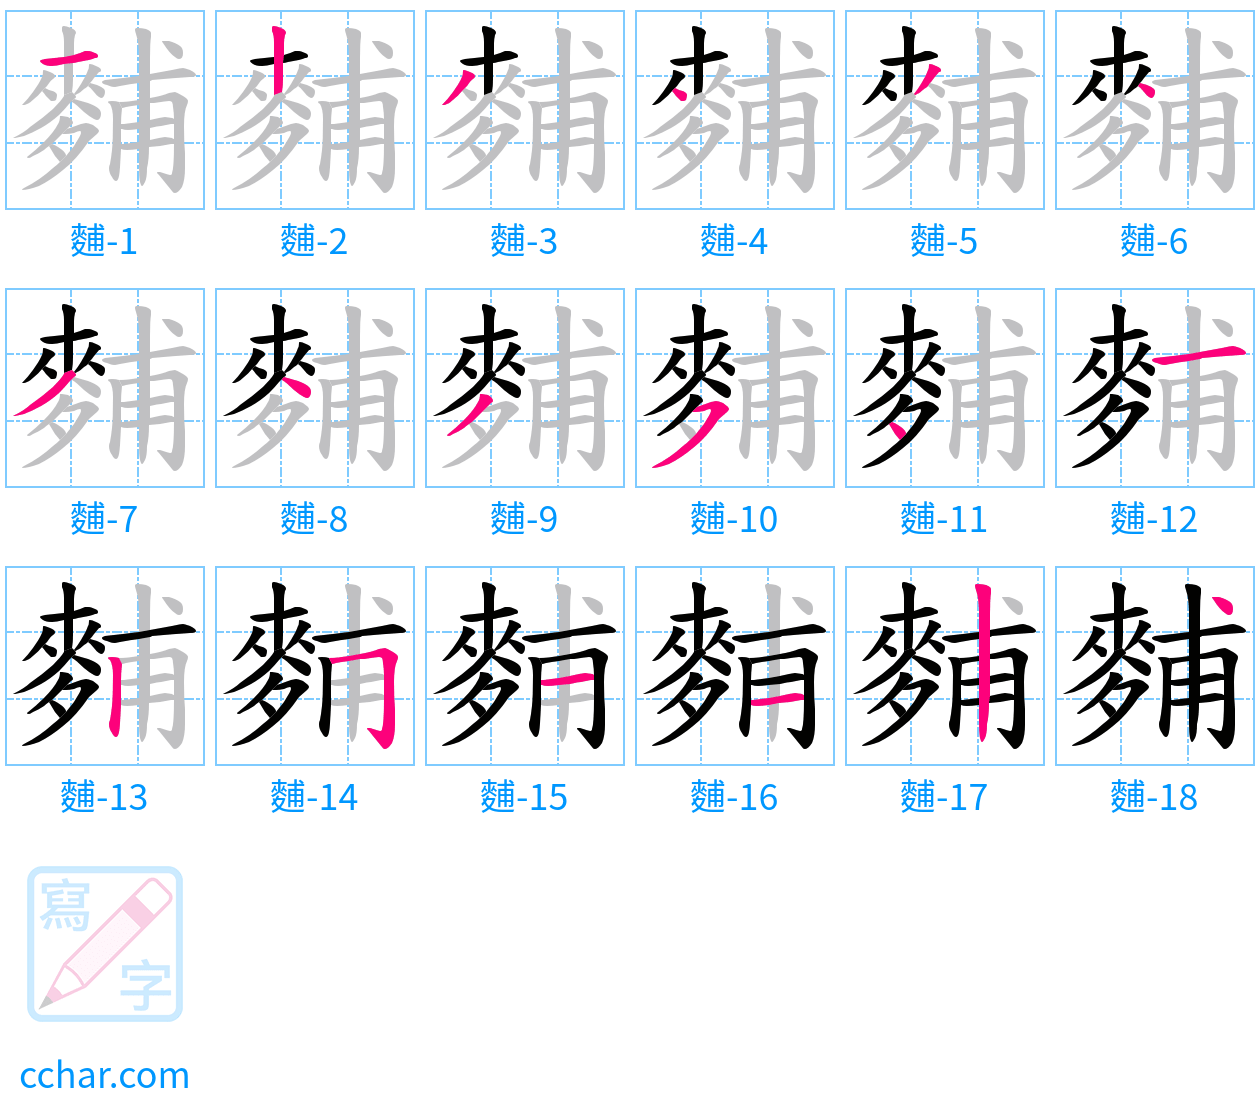 麱 stroke order step-by-step diagram